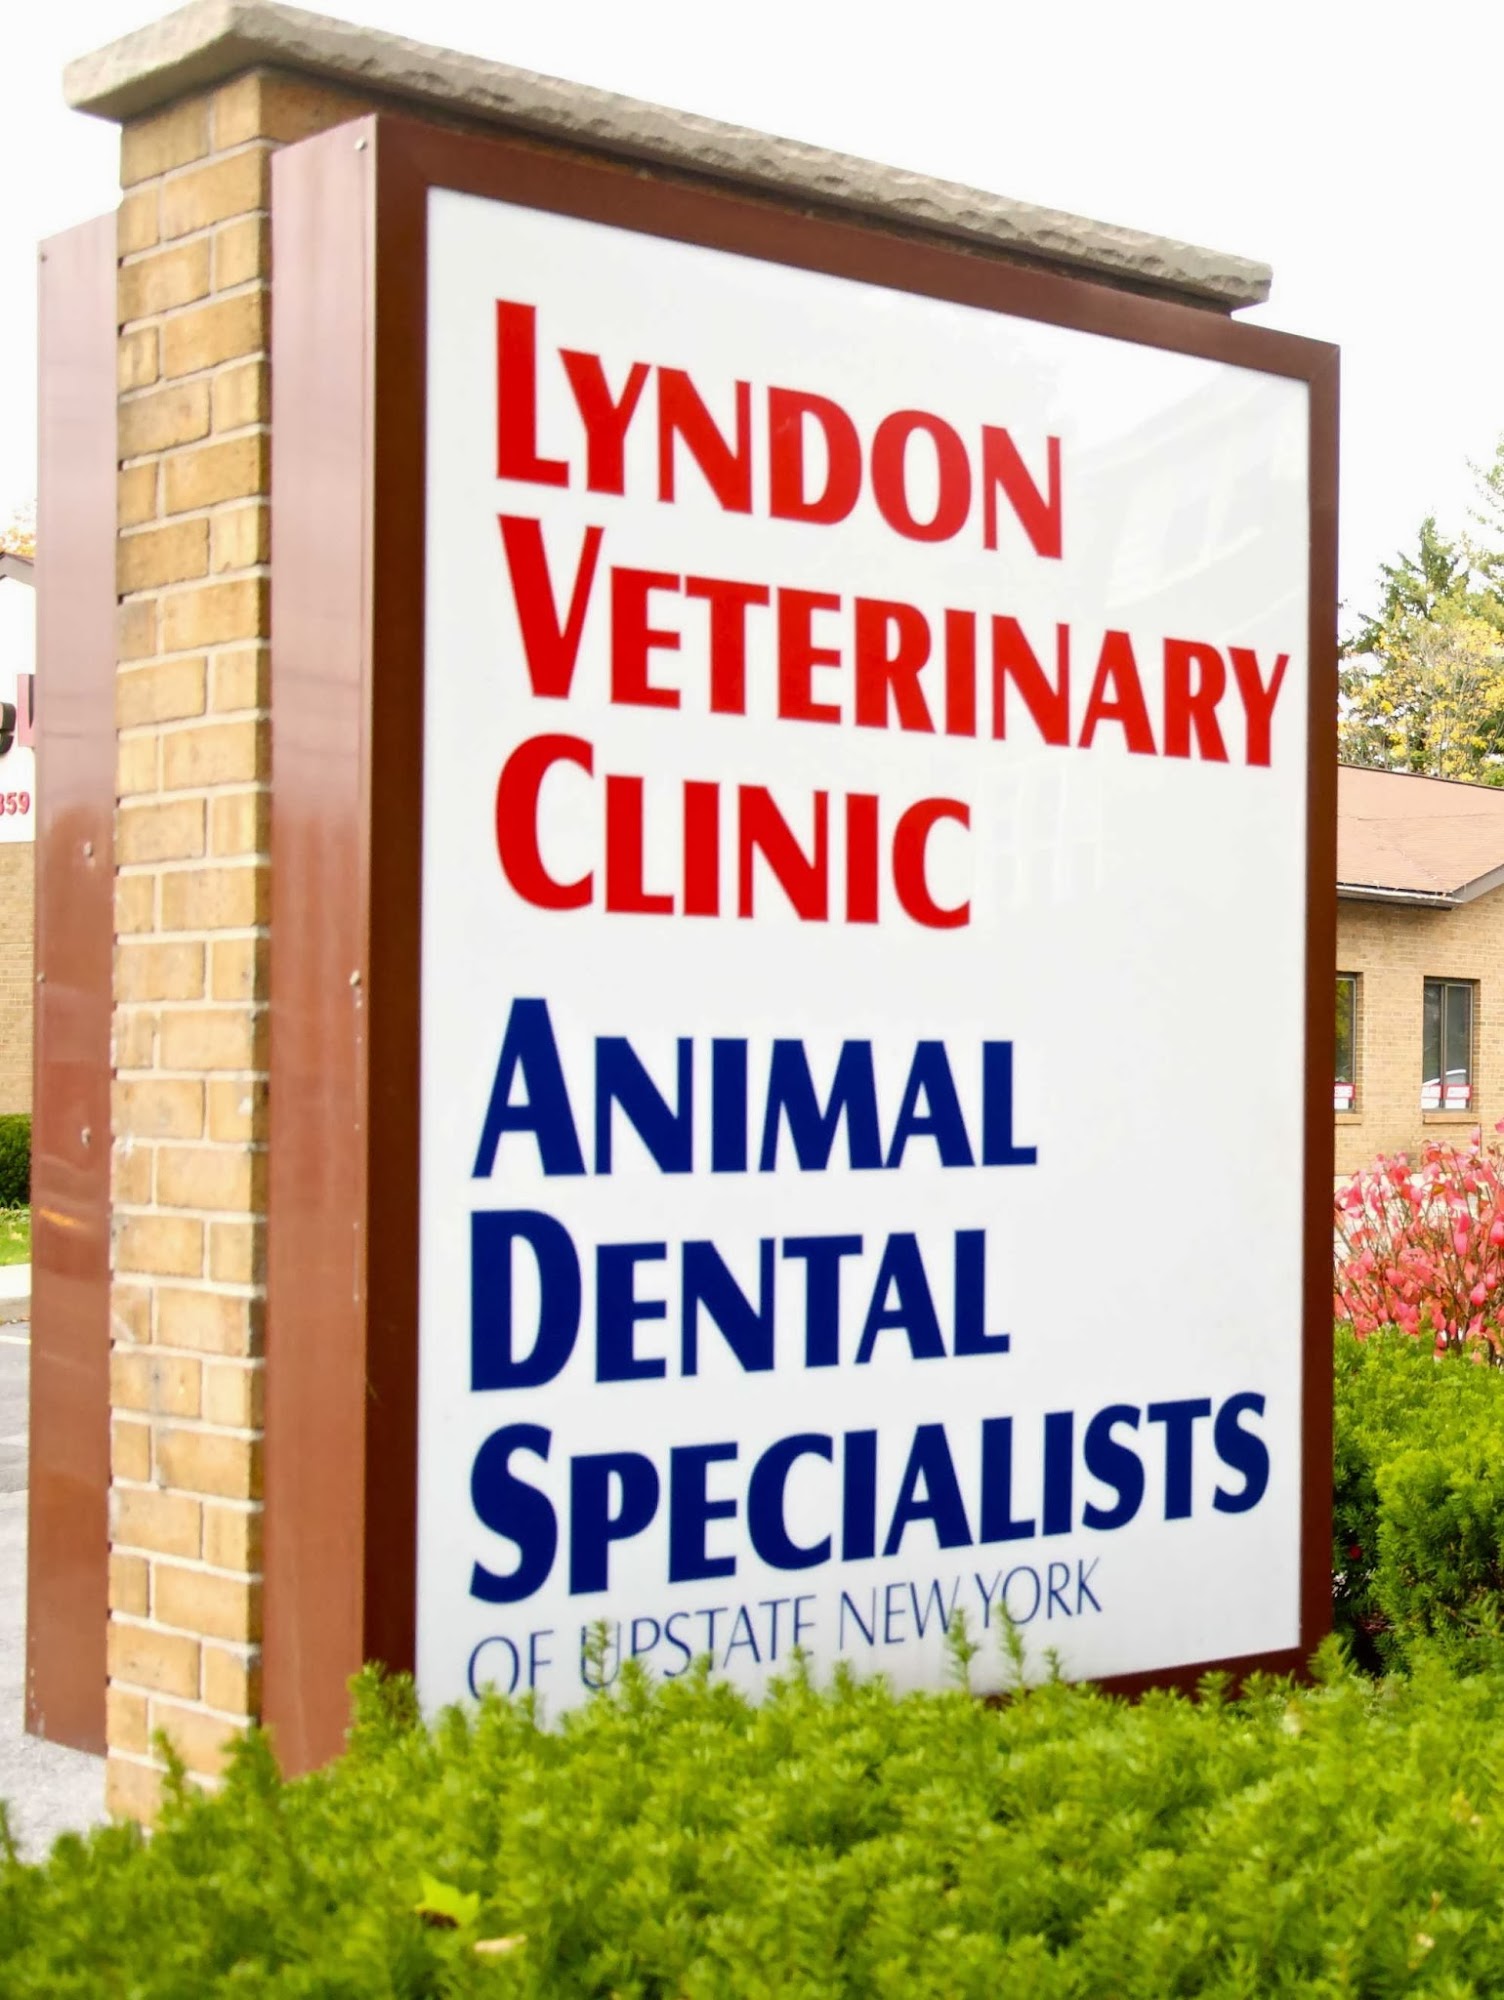 Lyndon Veterinary Clinic